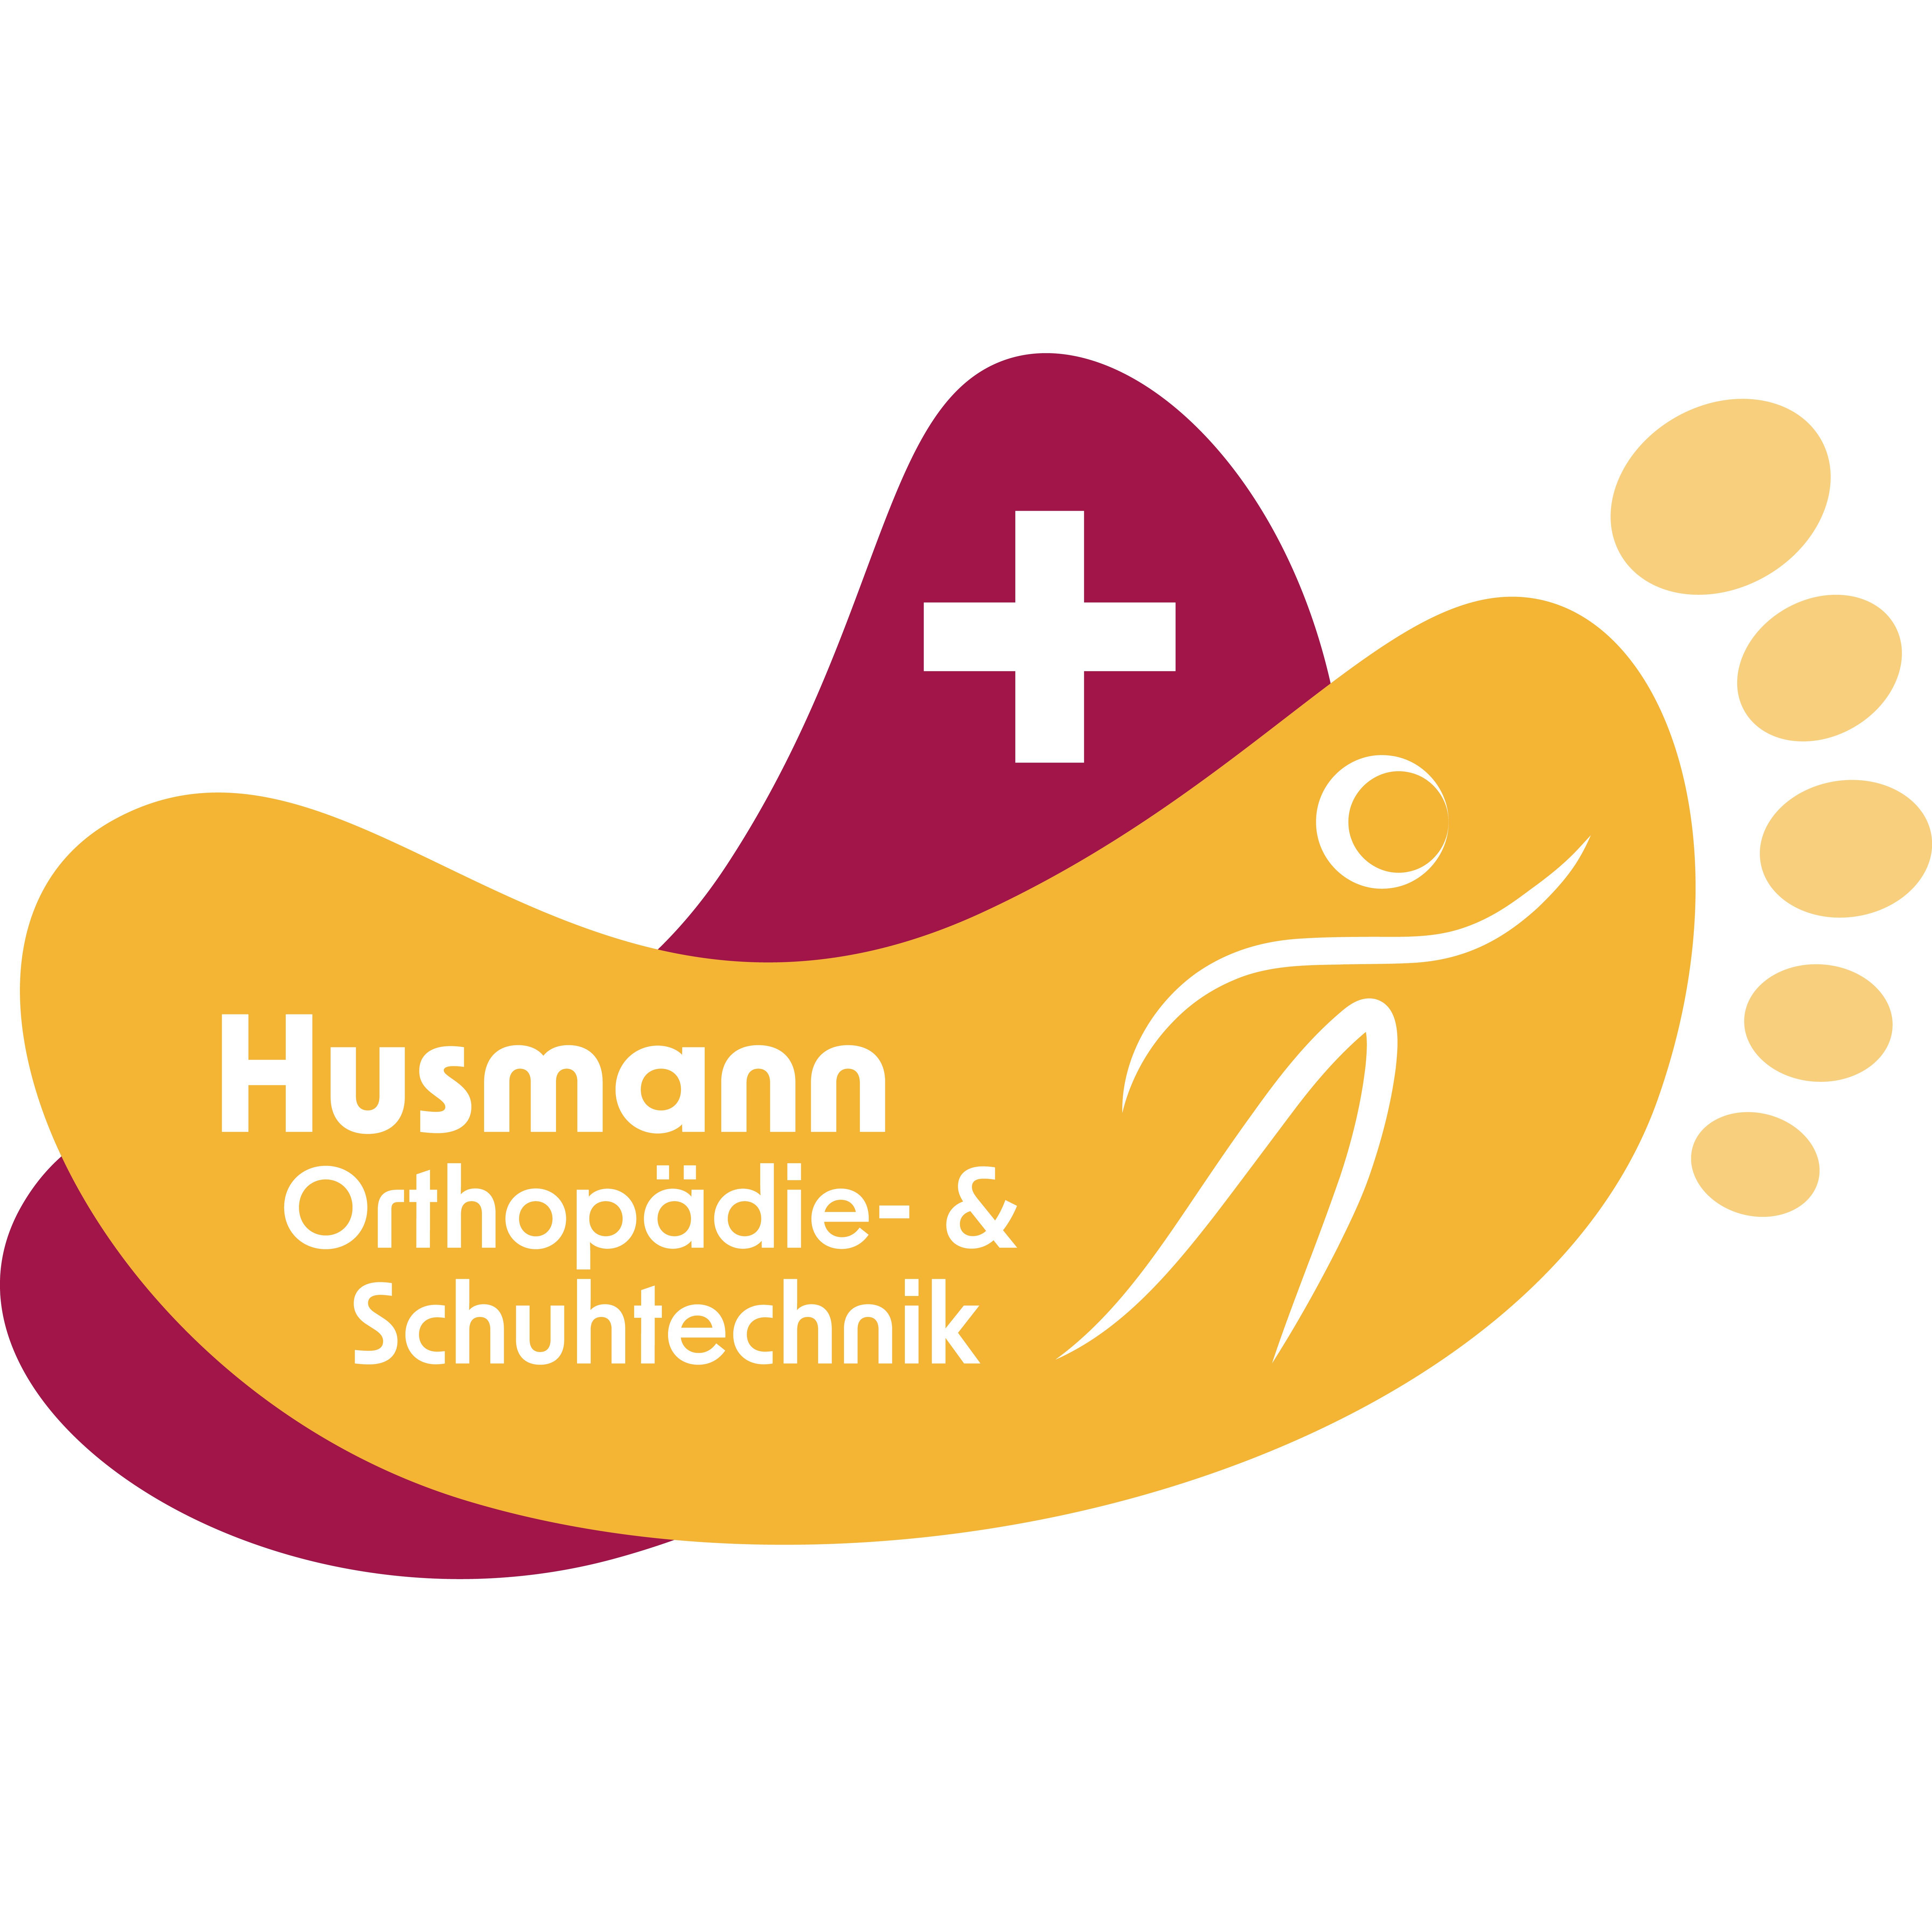 Husmann Orthopädie- & Schuhtechnik Logo